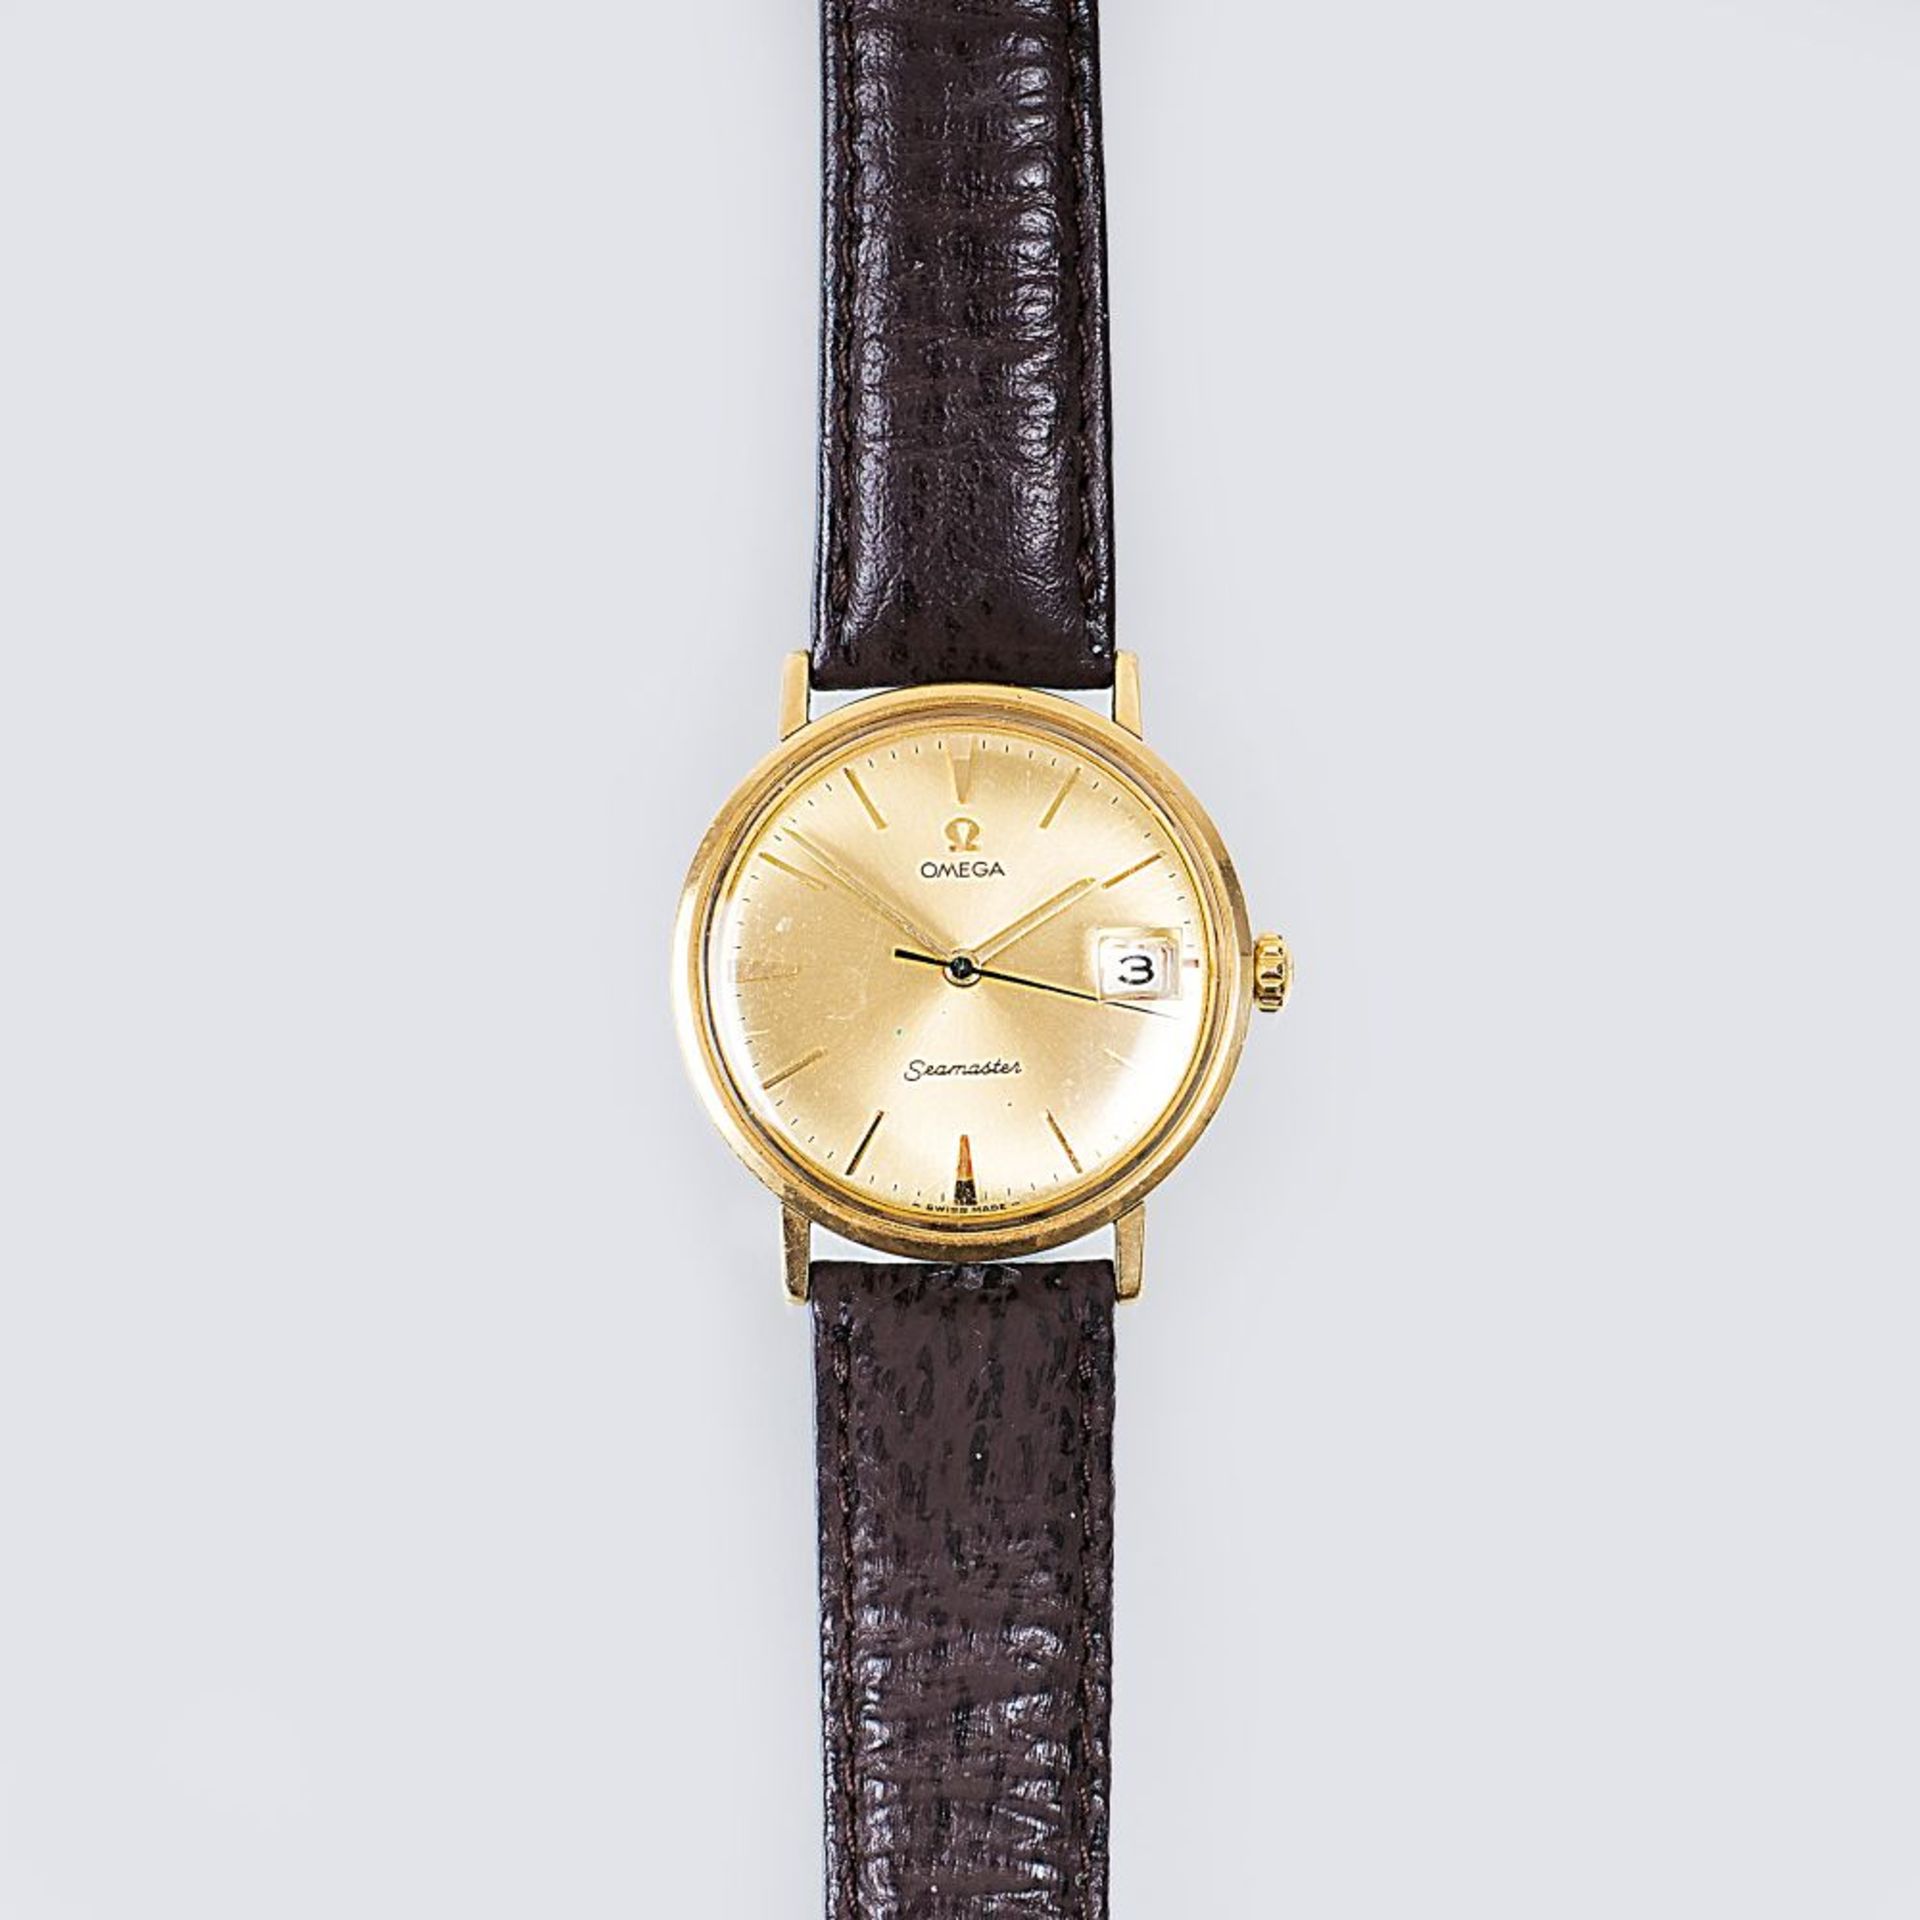 Omega gegr. 1848 in La Chaux-de-Fonds. Vintage Herren-Armbanduhr 'Seamaster'. Um 1960. Stahl,